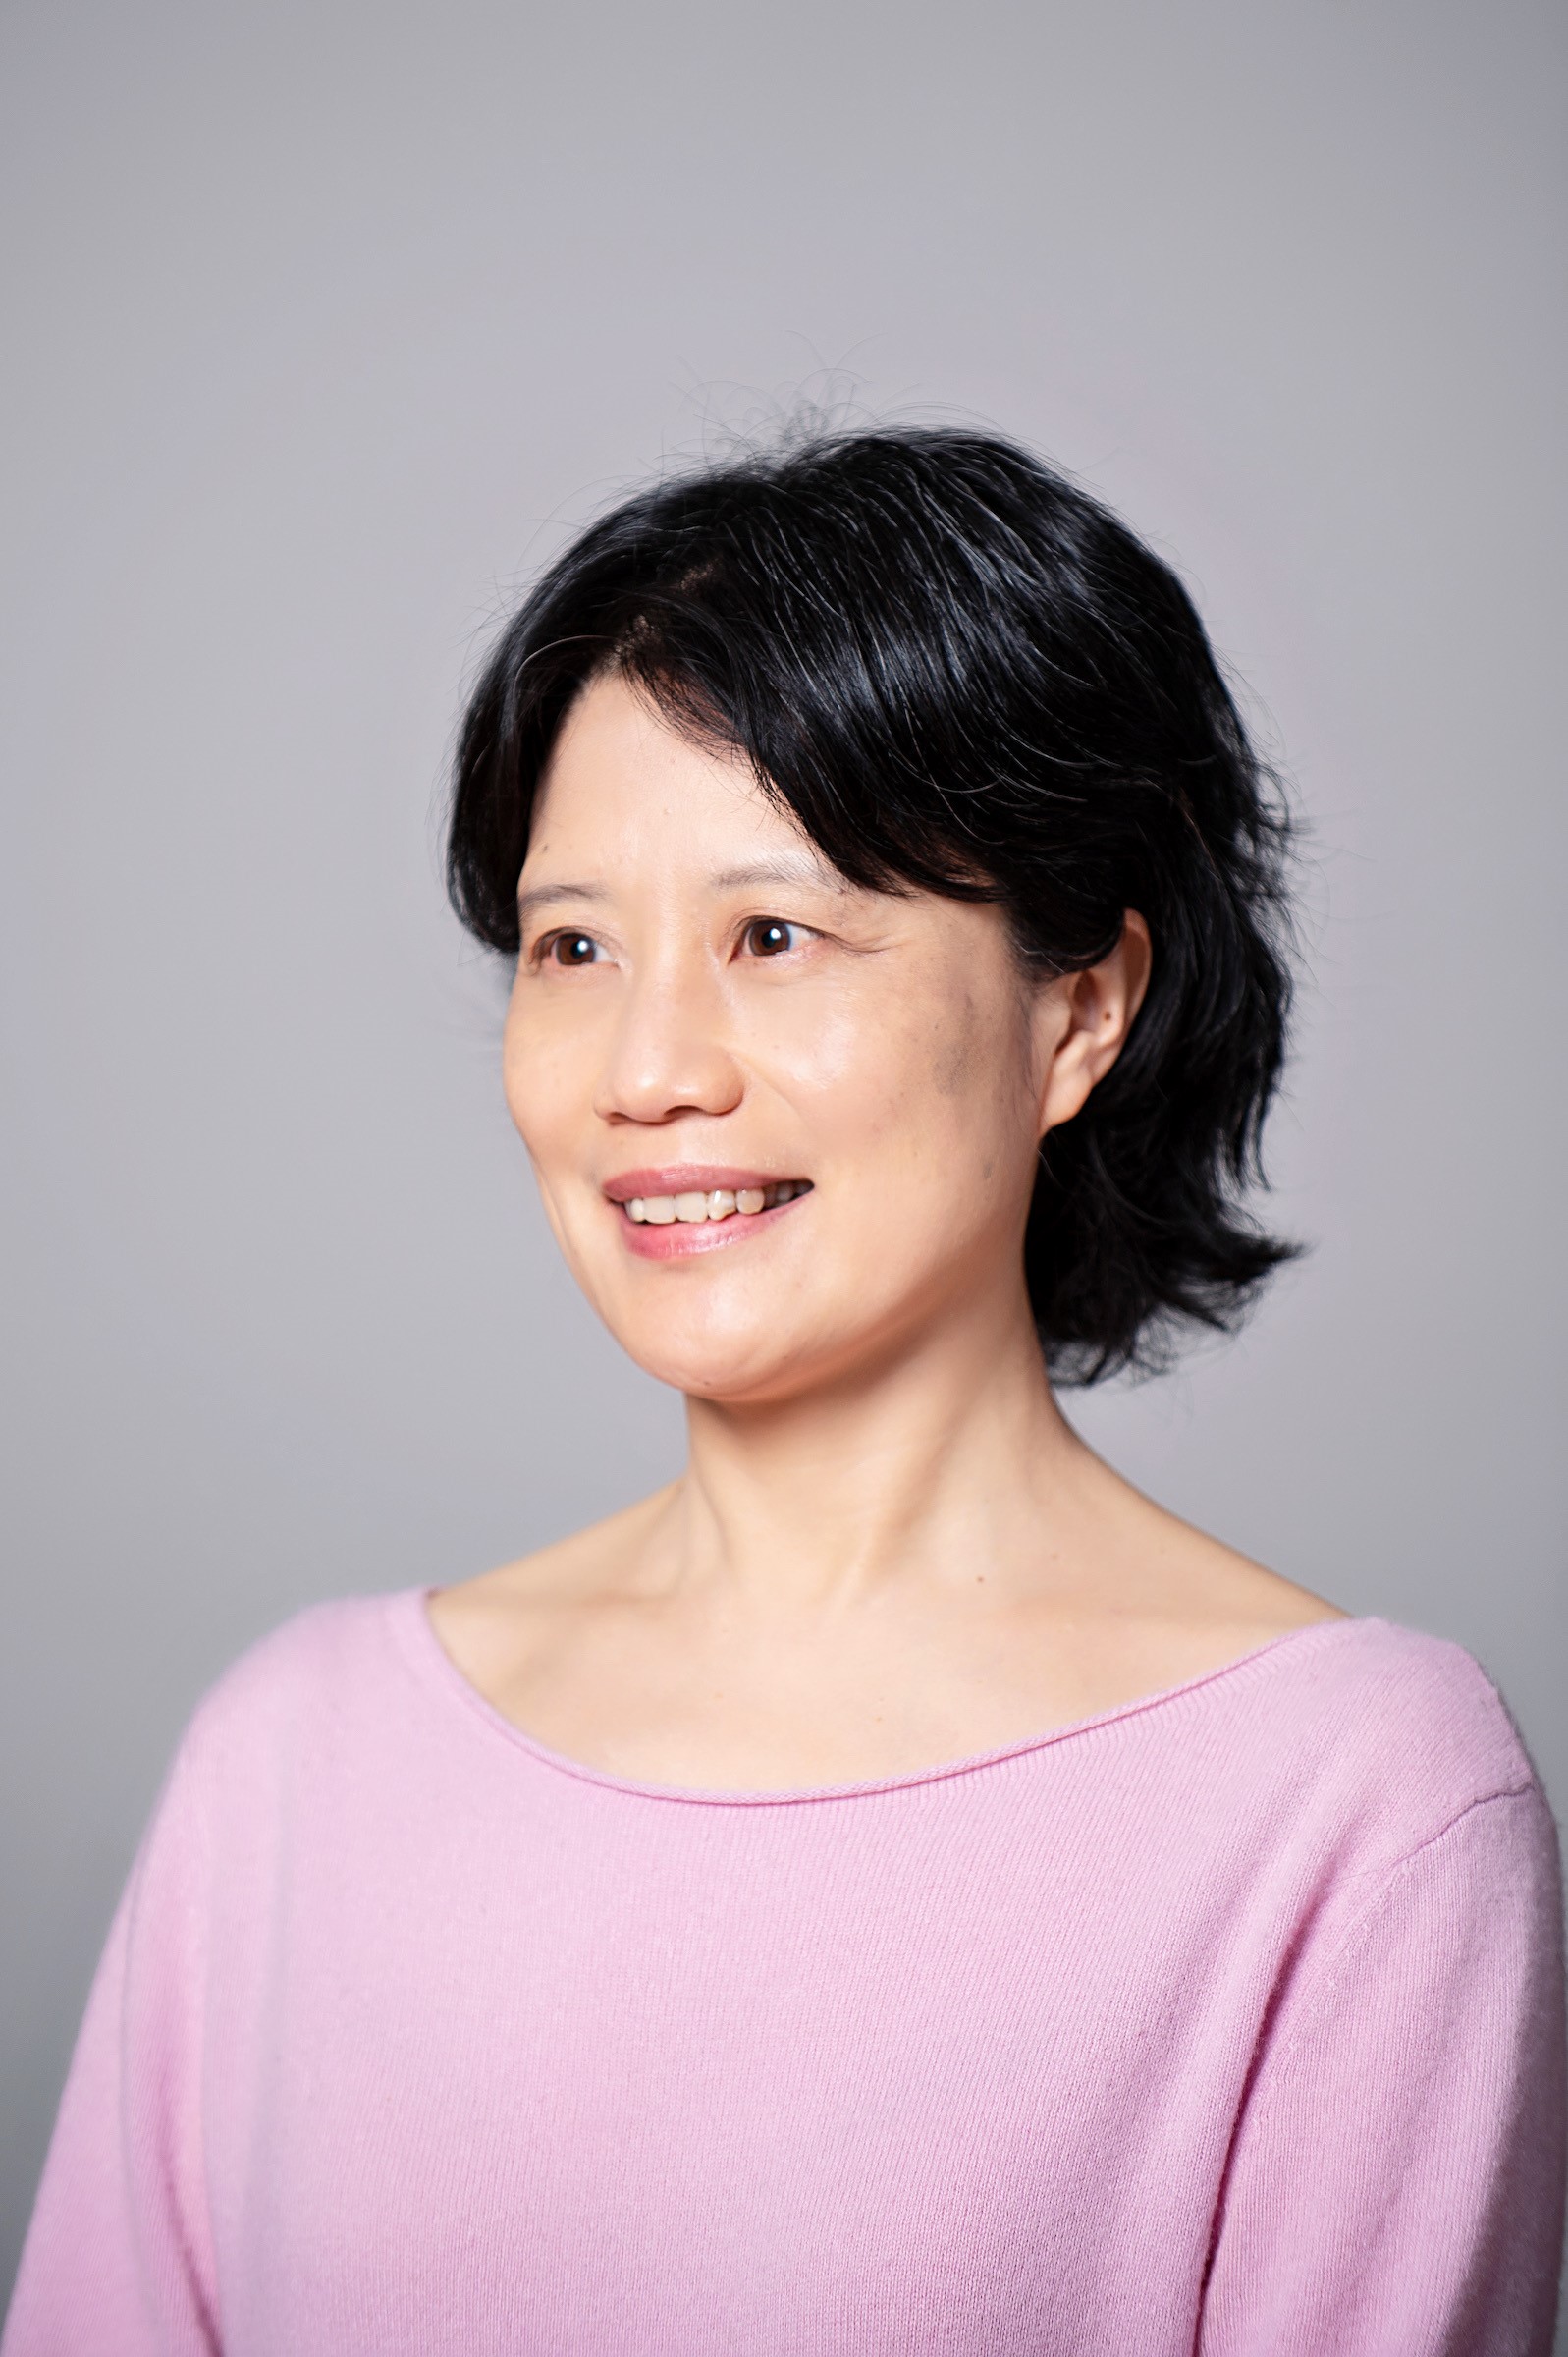 Image of presenter Fang Fang Zhang